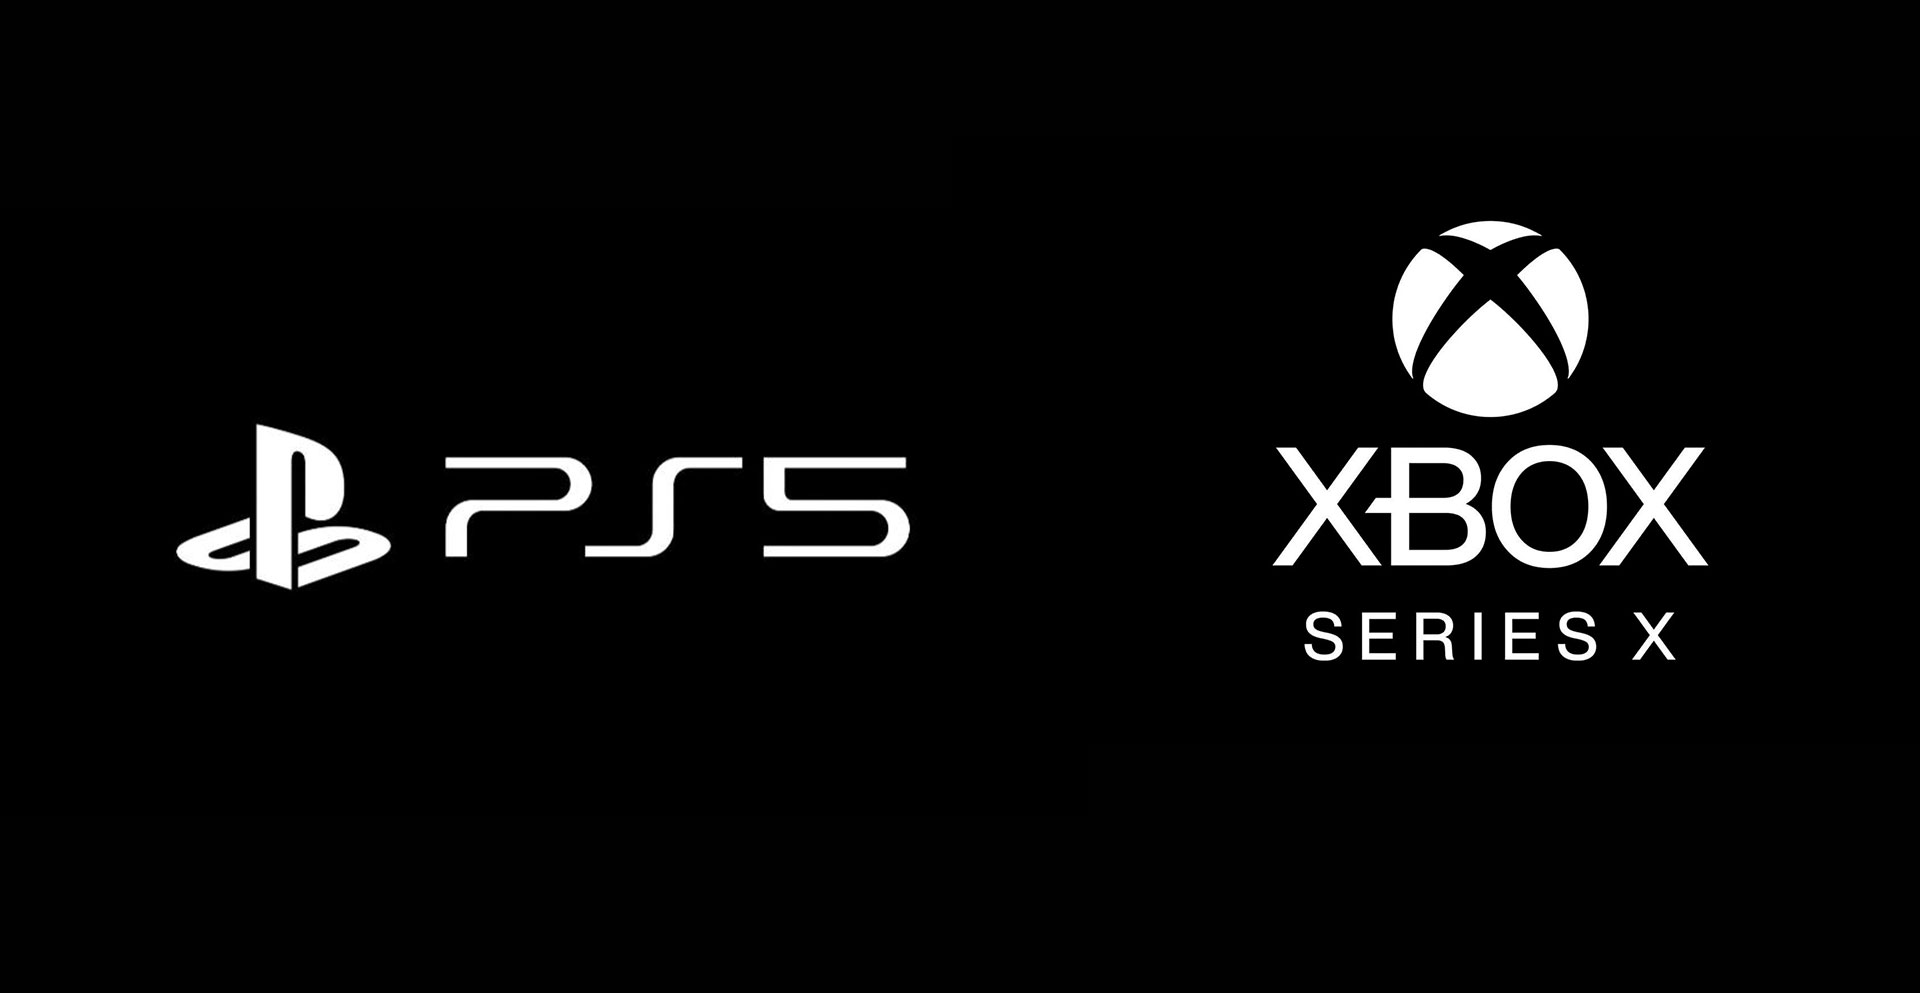 GTA 6: Possível Multiplataforma para PS5 e Xbox Series X/S